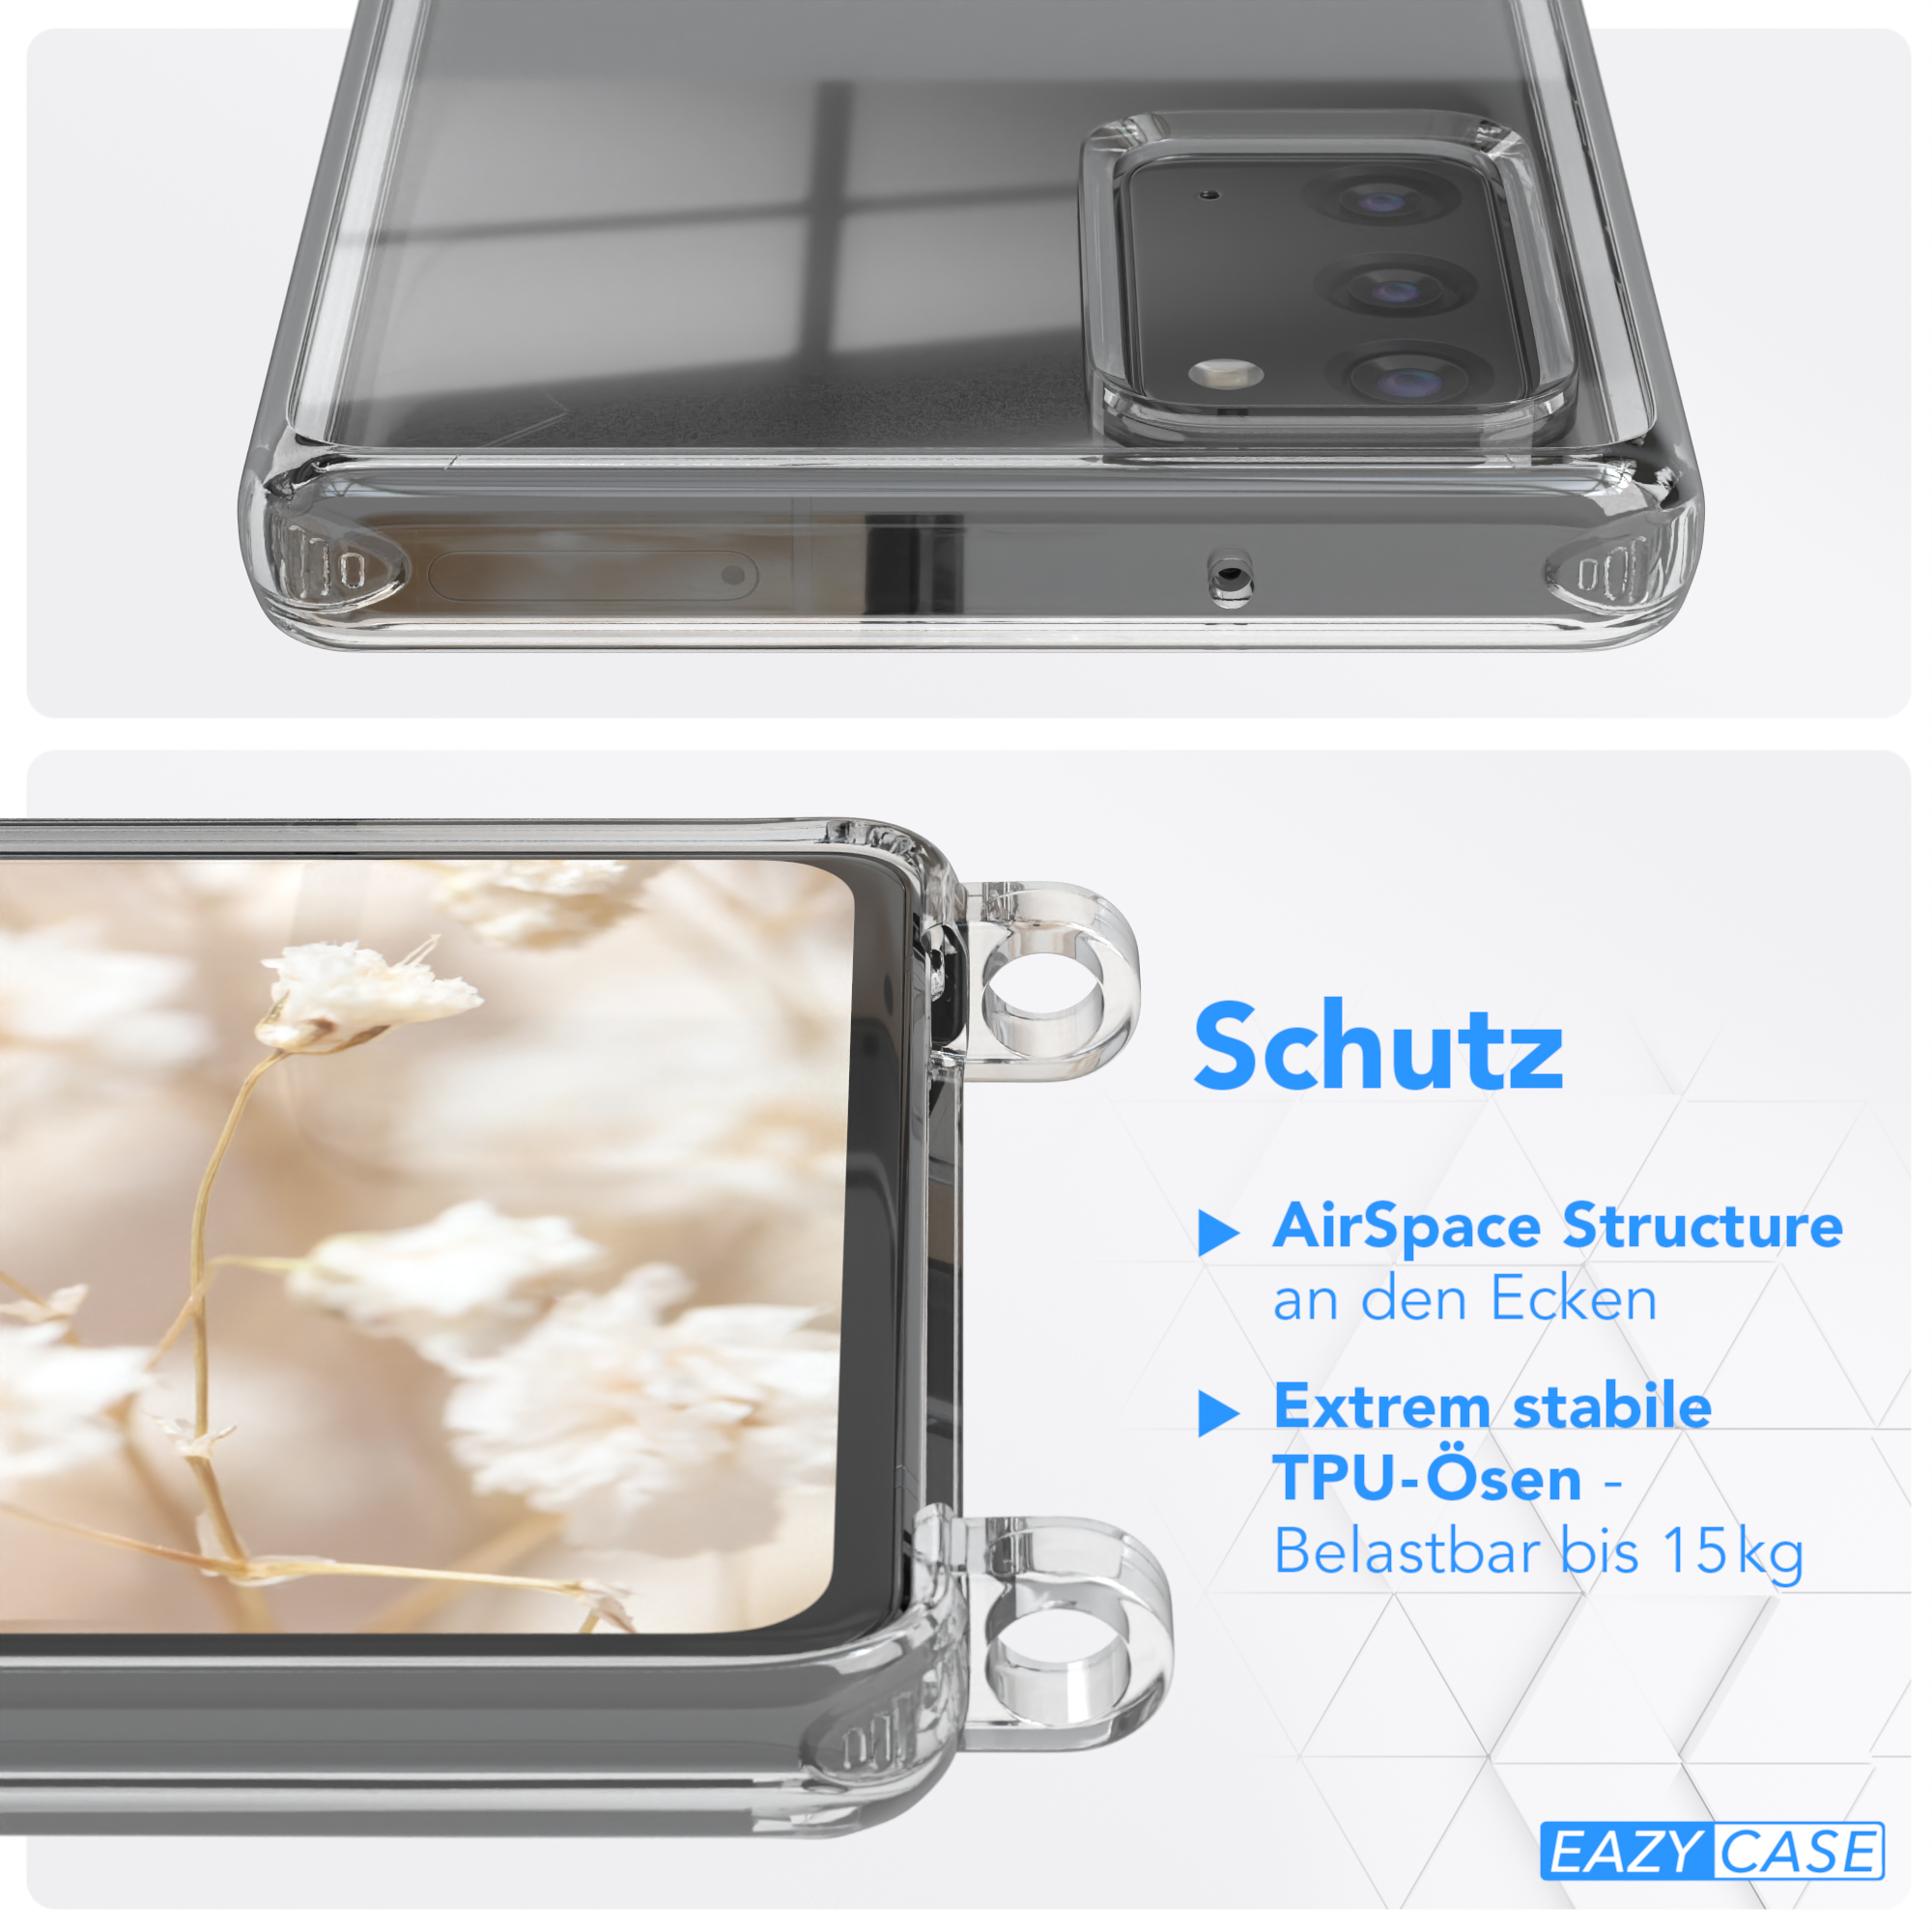 Galaxy Note 5G, 20 Braun CASE Transparente Style, Rot Handyhülle Kordel / / 20 Note Umhängetasche, mit EAZY Boho Samsung,